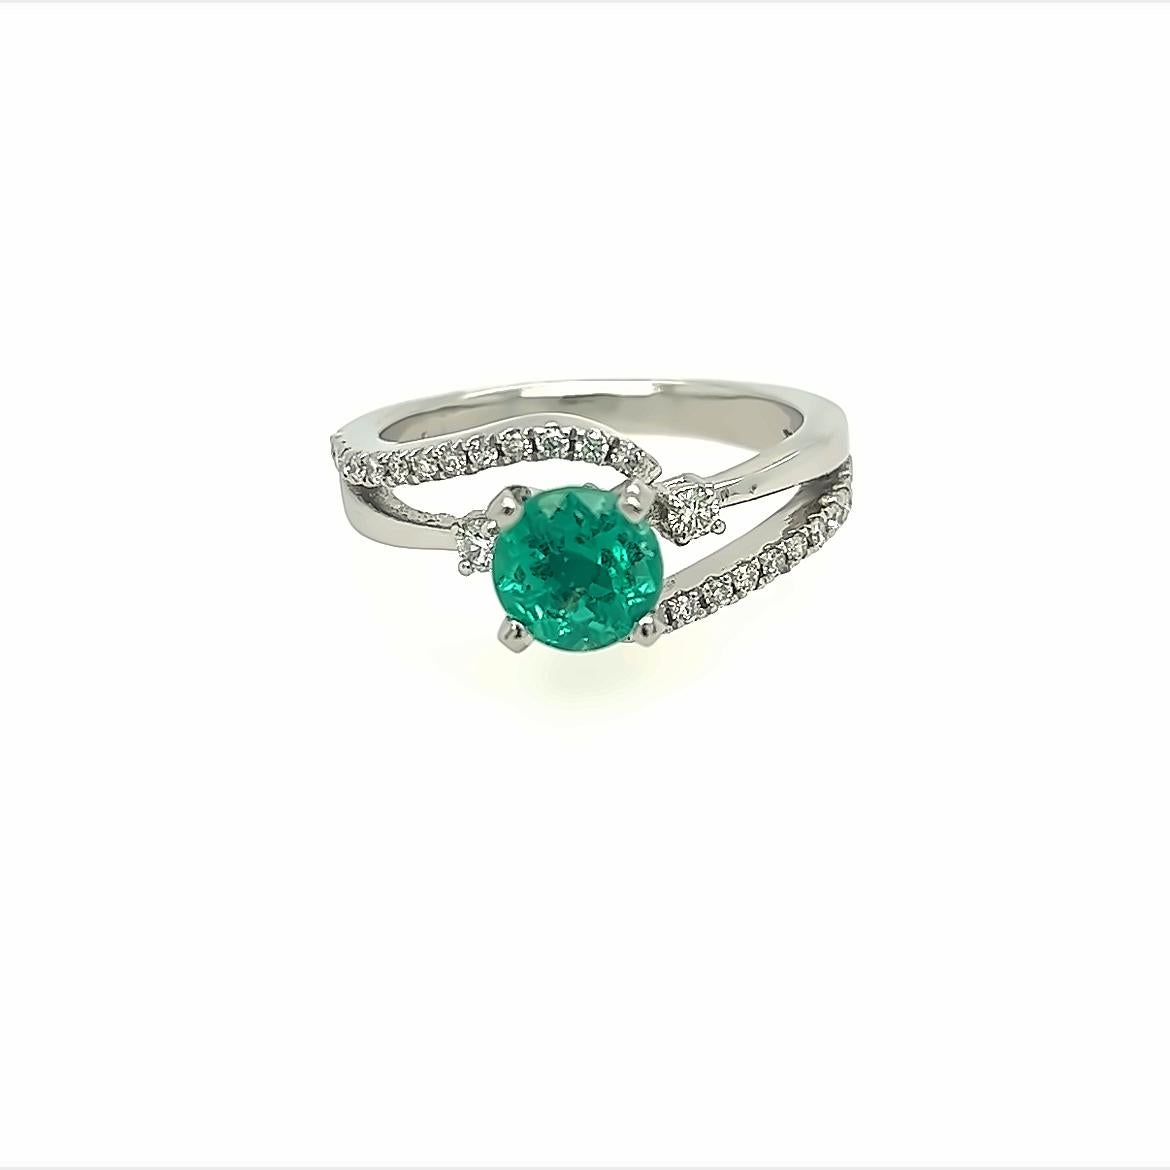 50 carat emerald